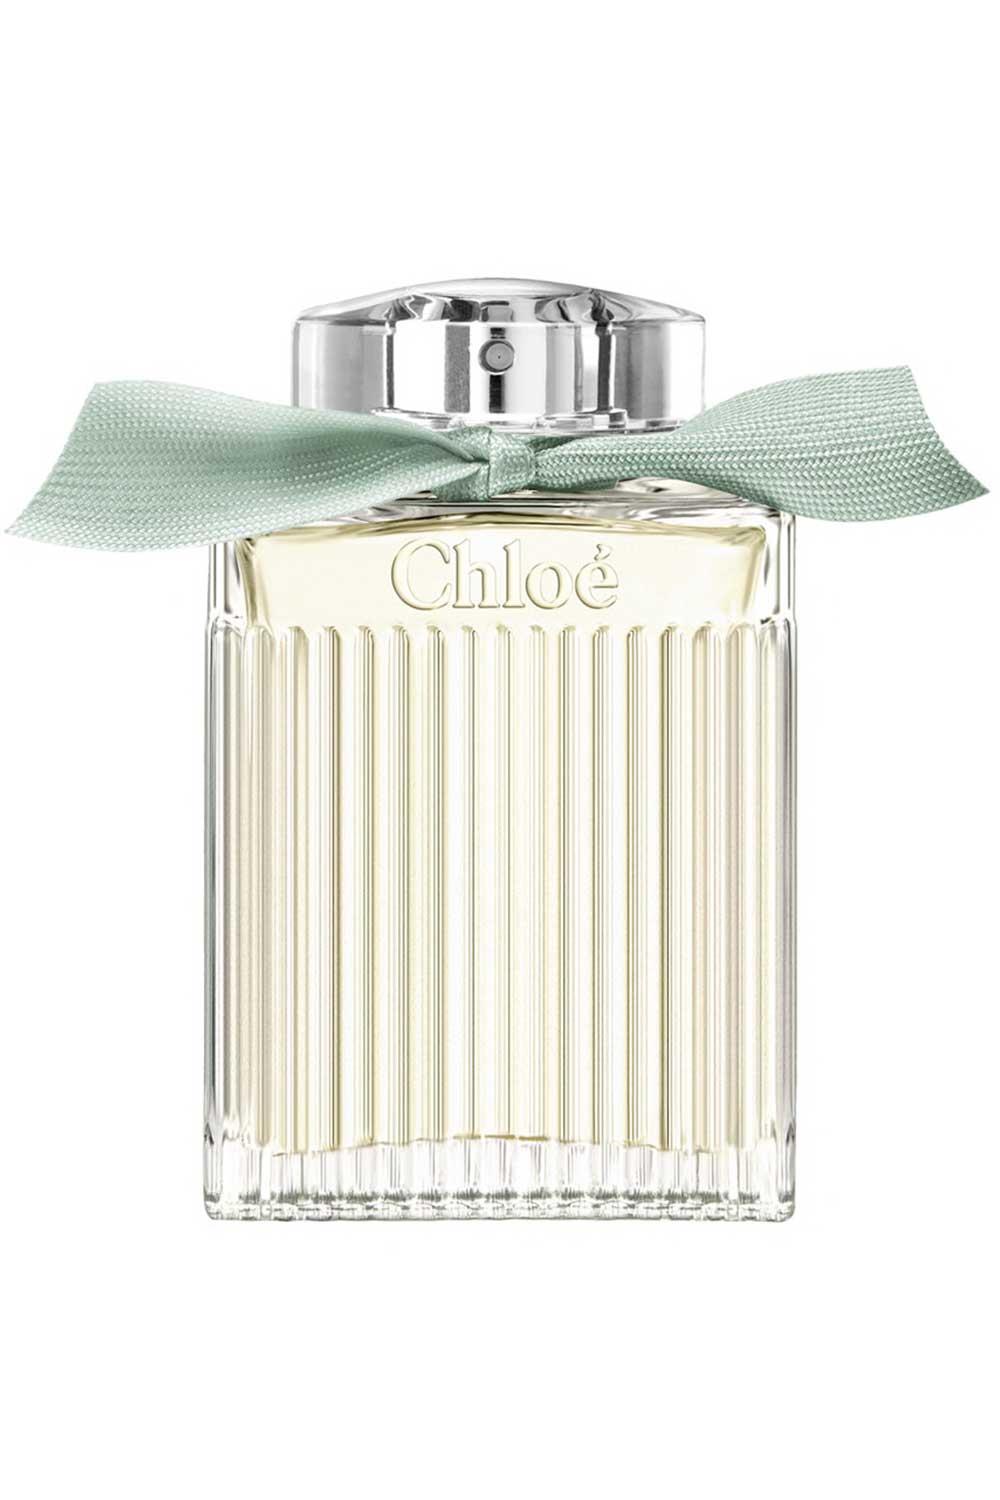 Chloe8. Eau de Parfum Naturelle 100 ml Chloé